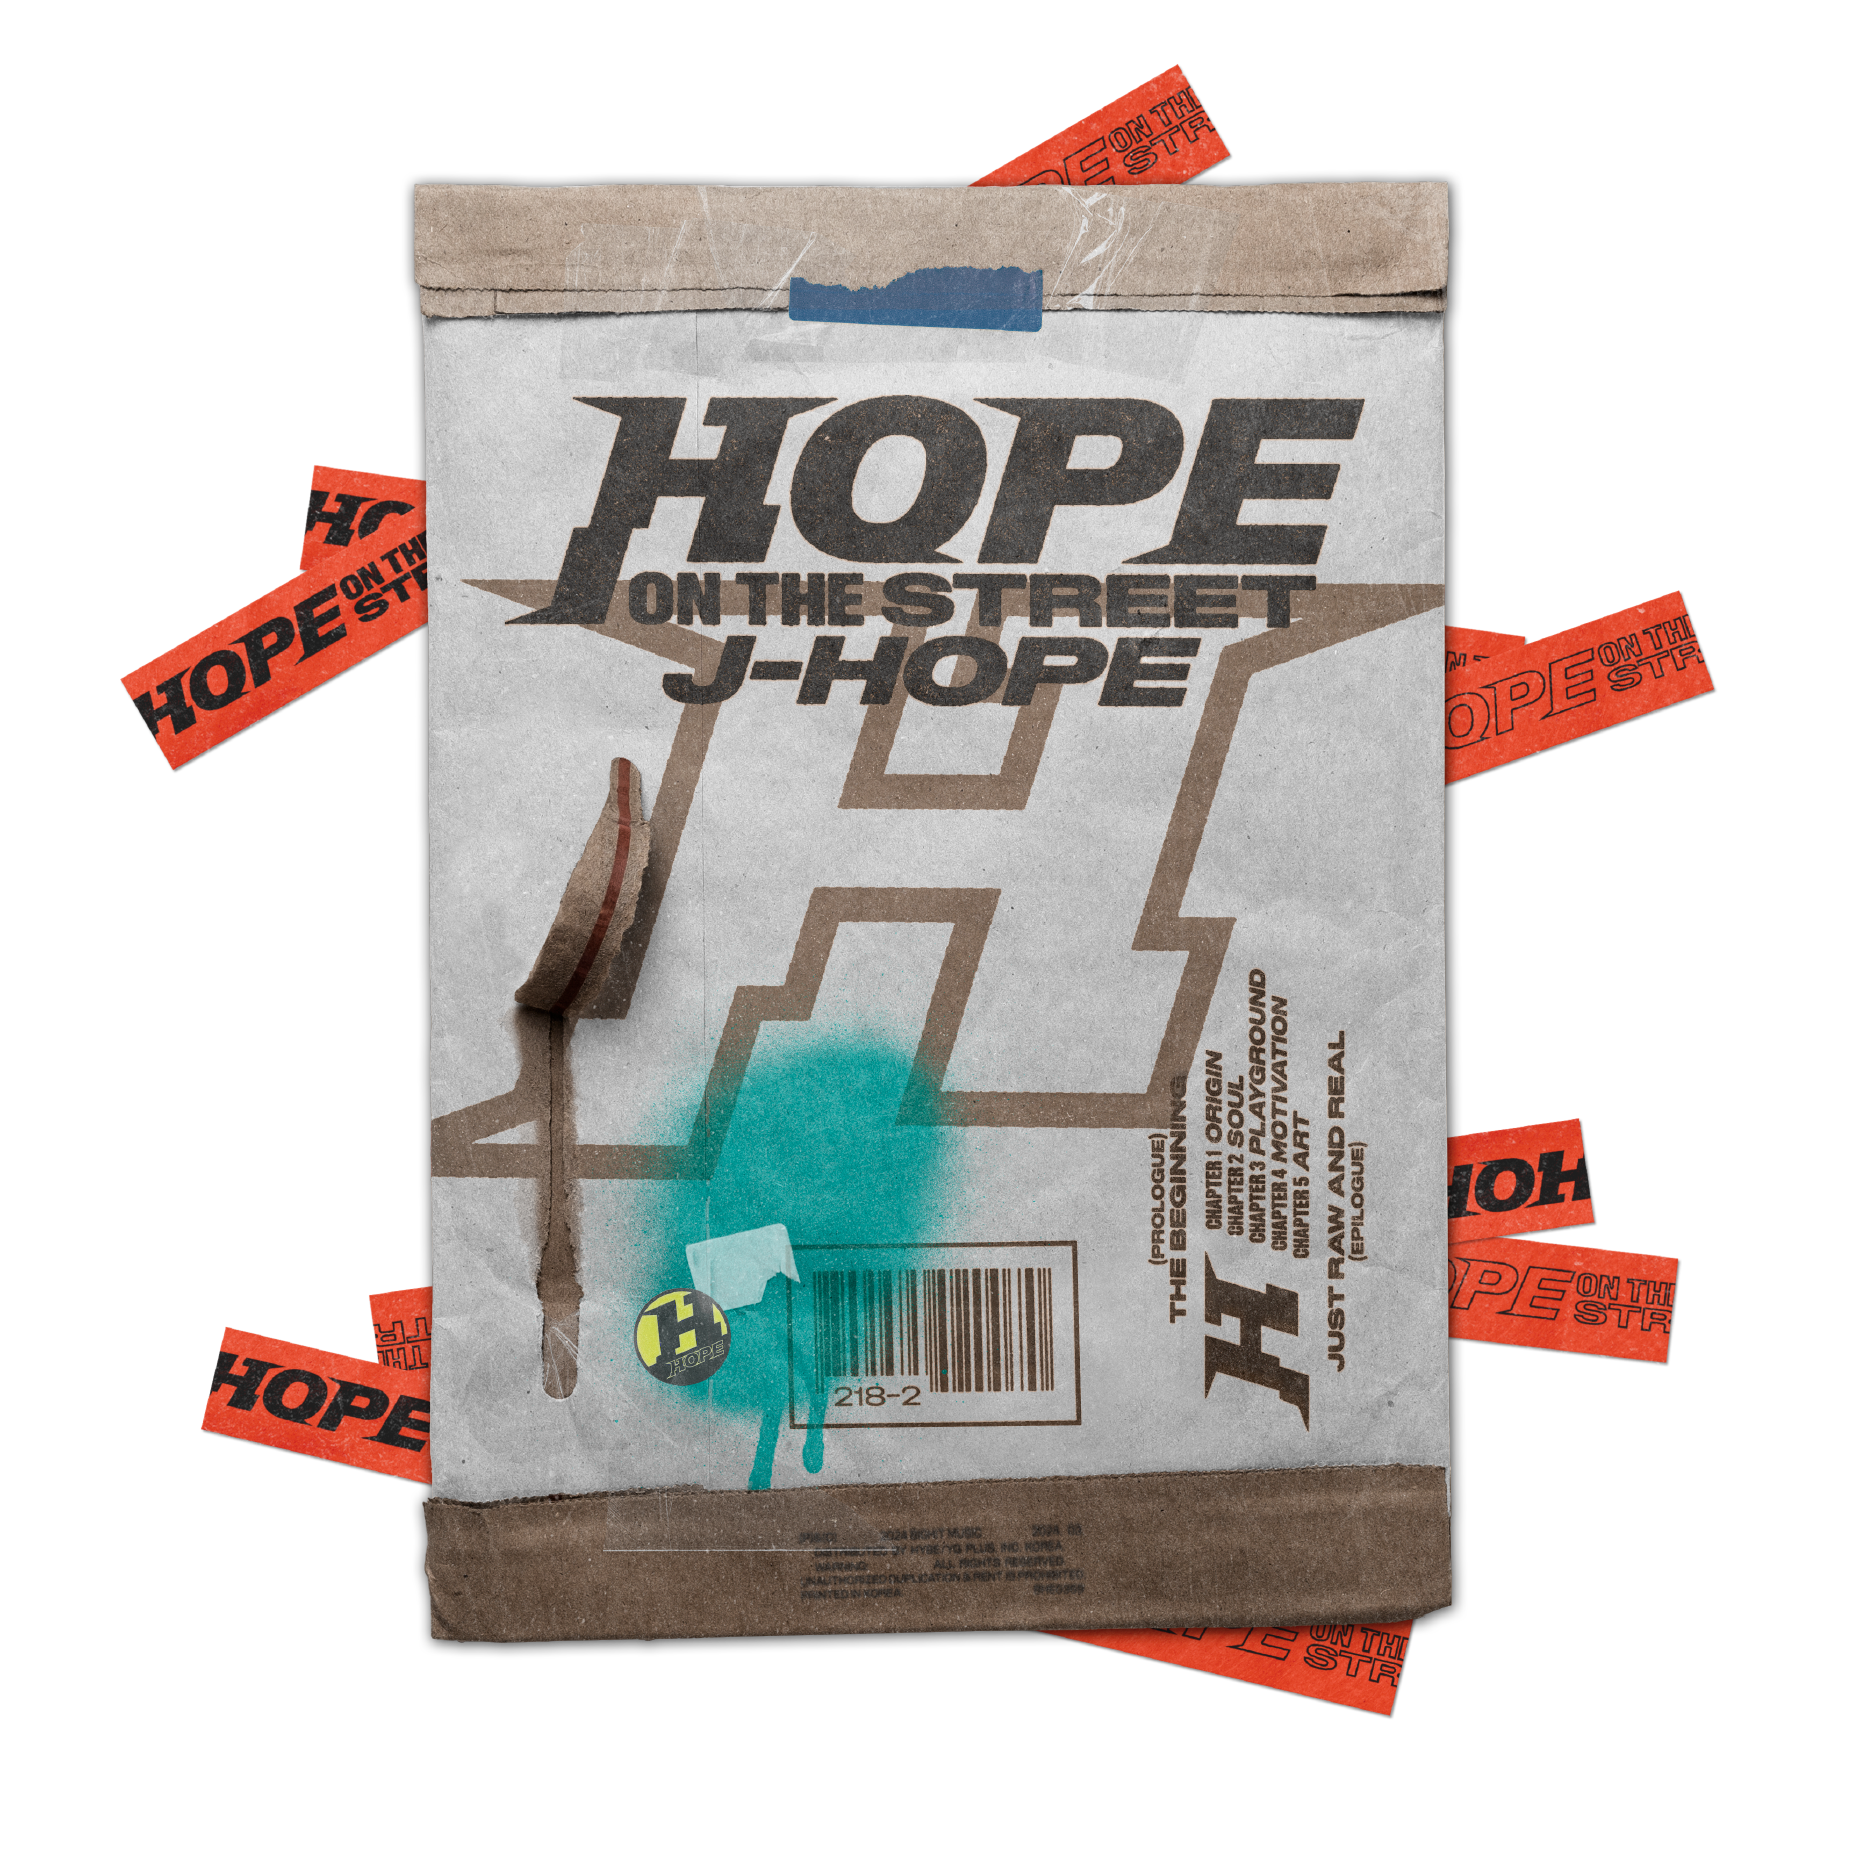 HOPE ON THE STREET VOL.1, J-HOPE